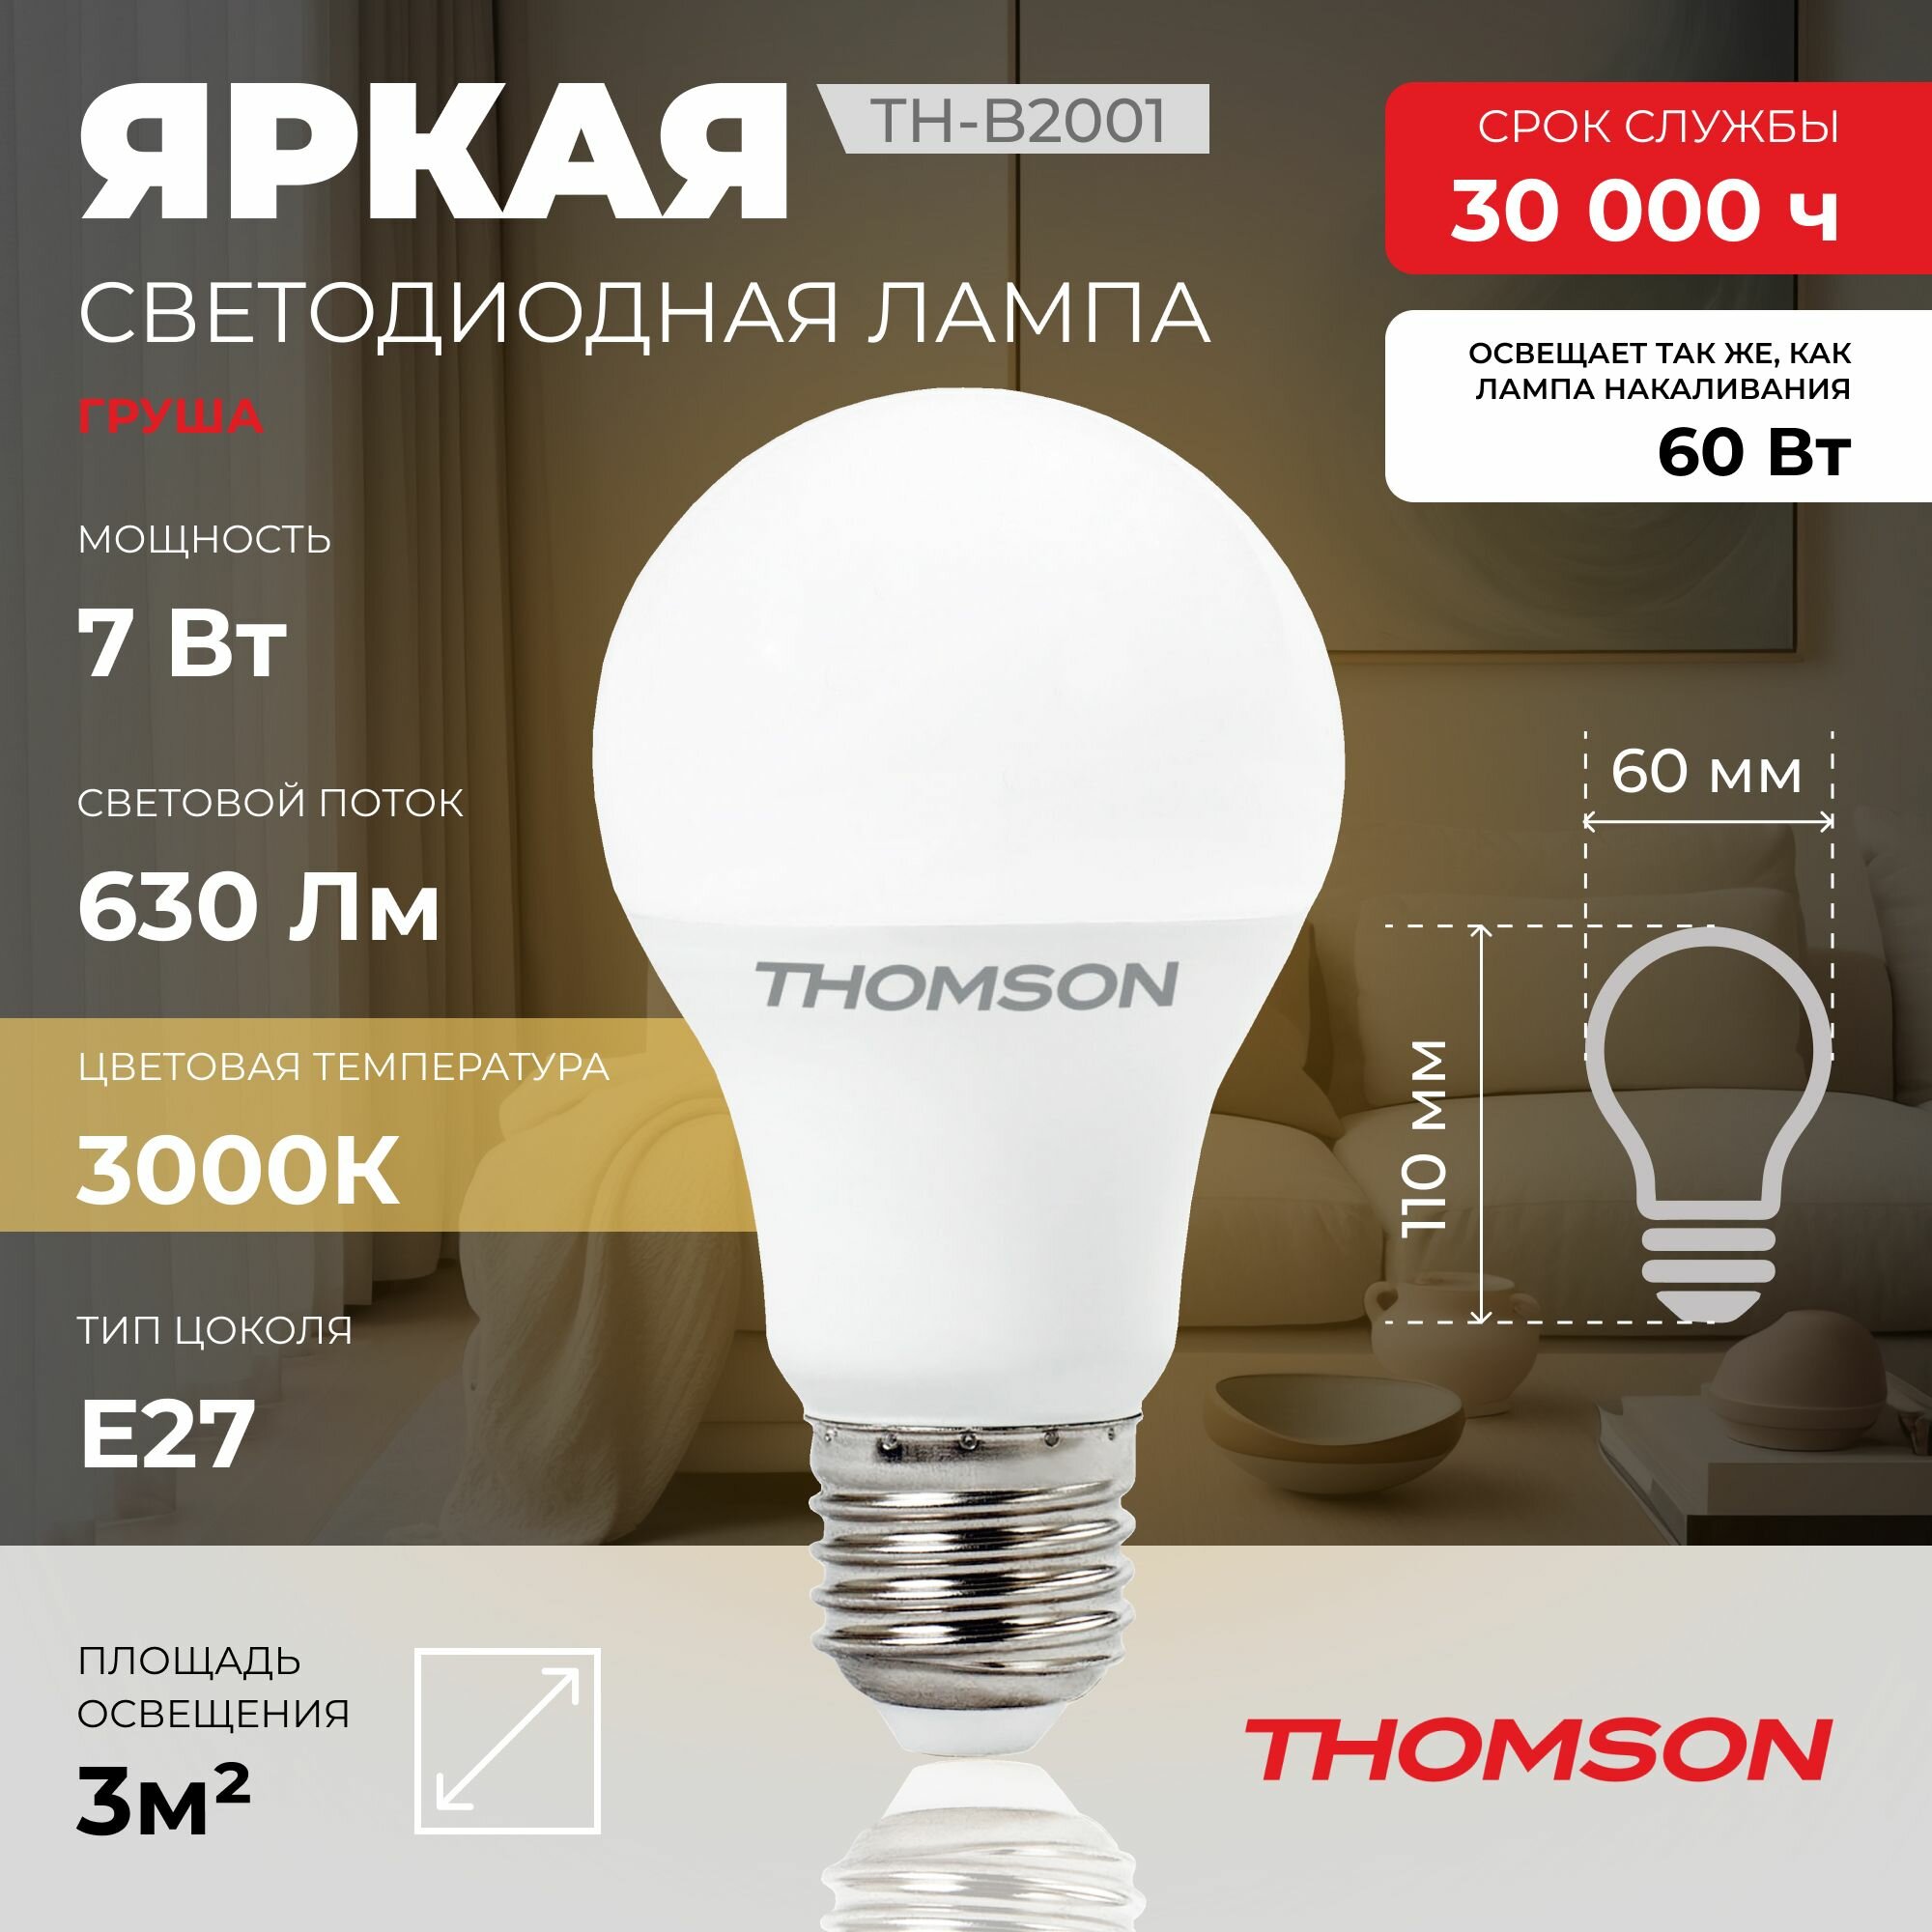 Лампочка Thomson TH-B2001 7 Вт, E27, 3000К, груша, теплый белый свет